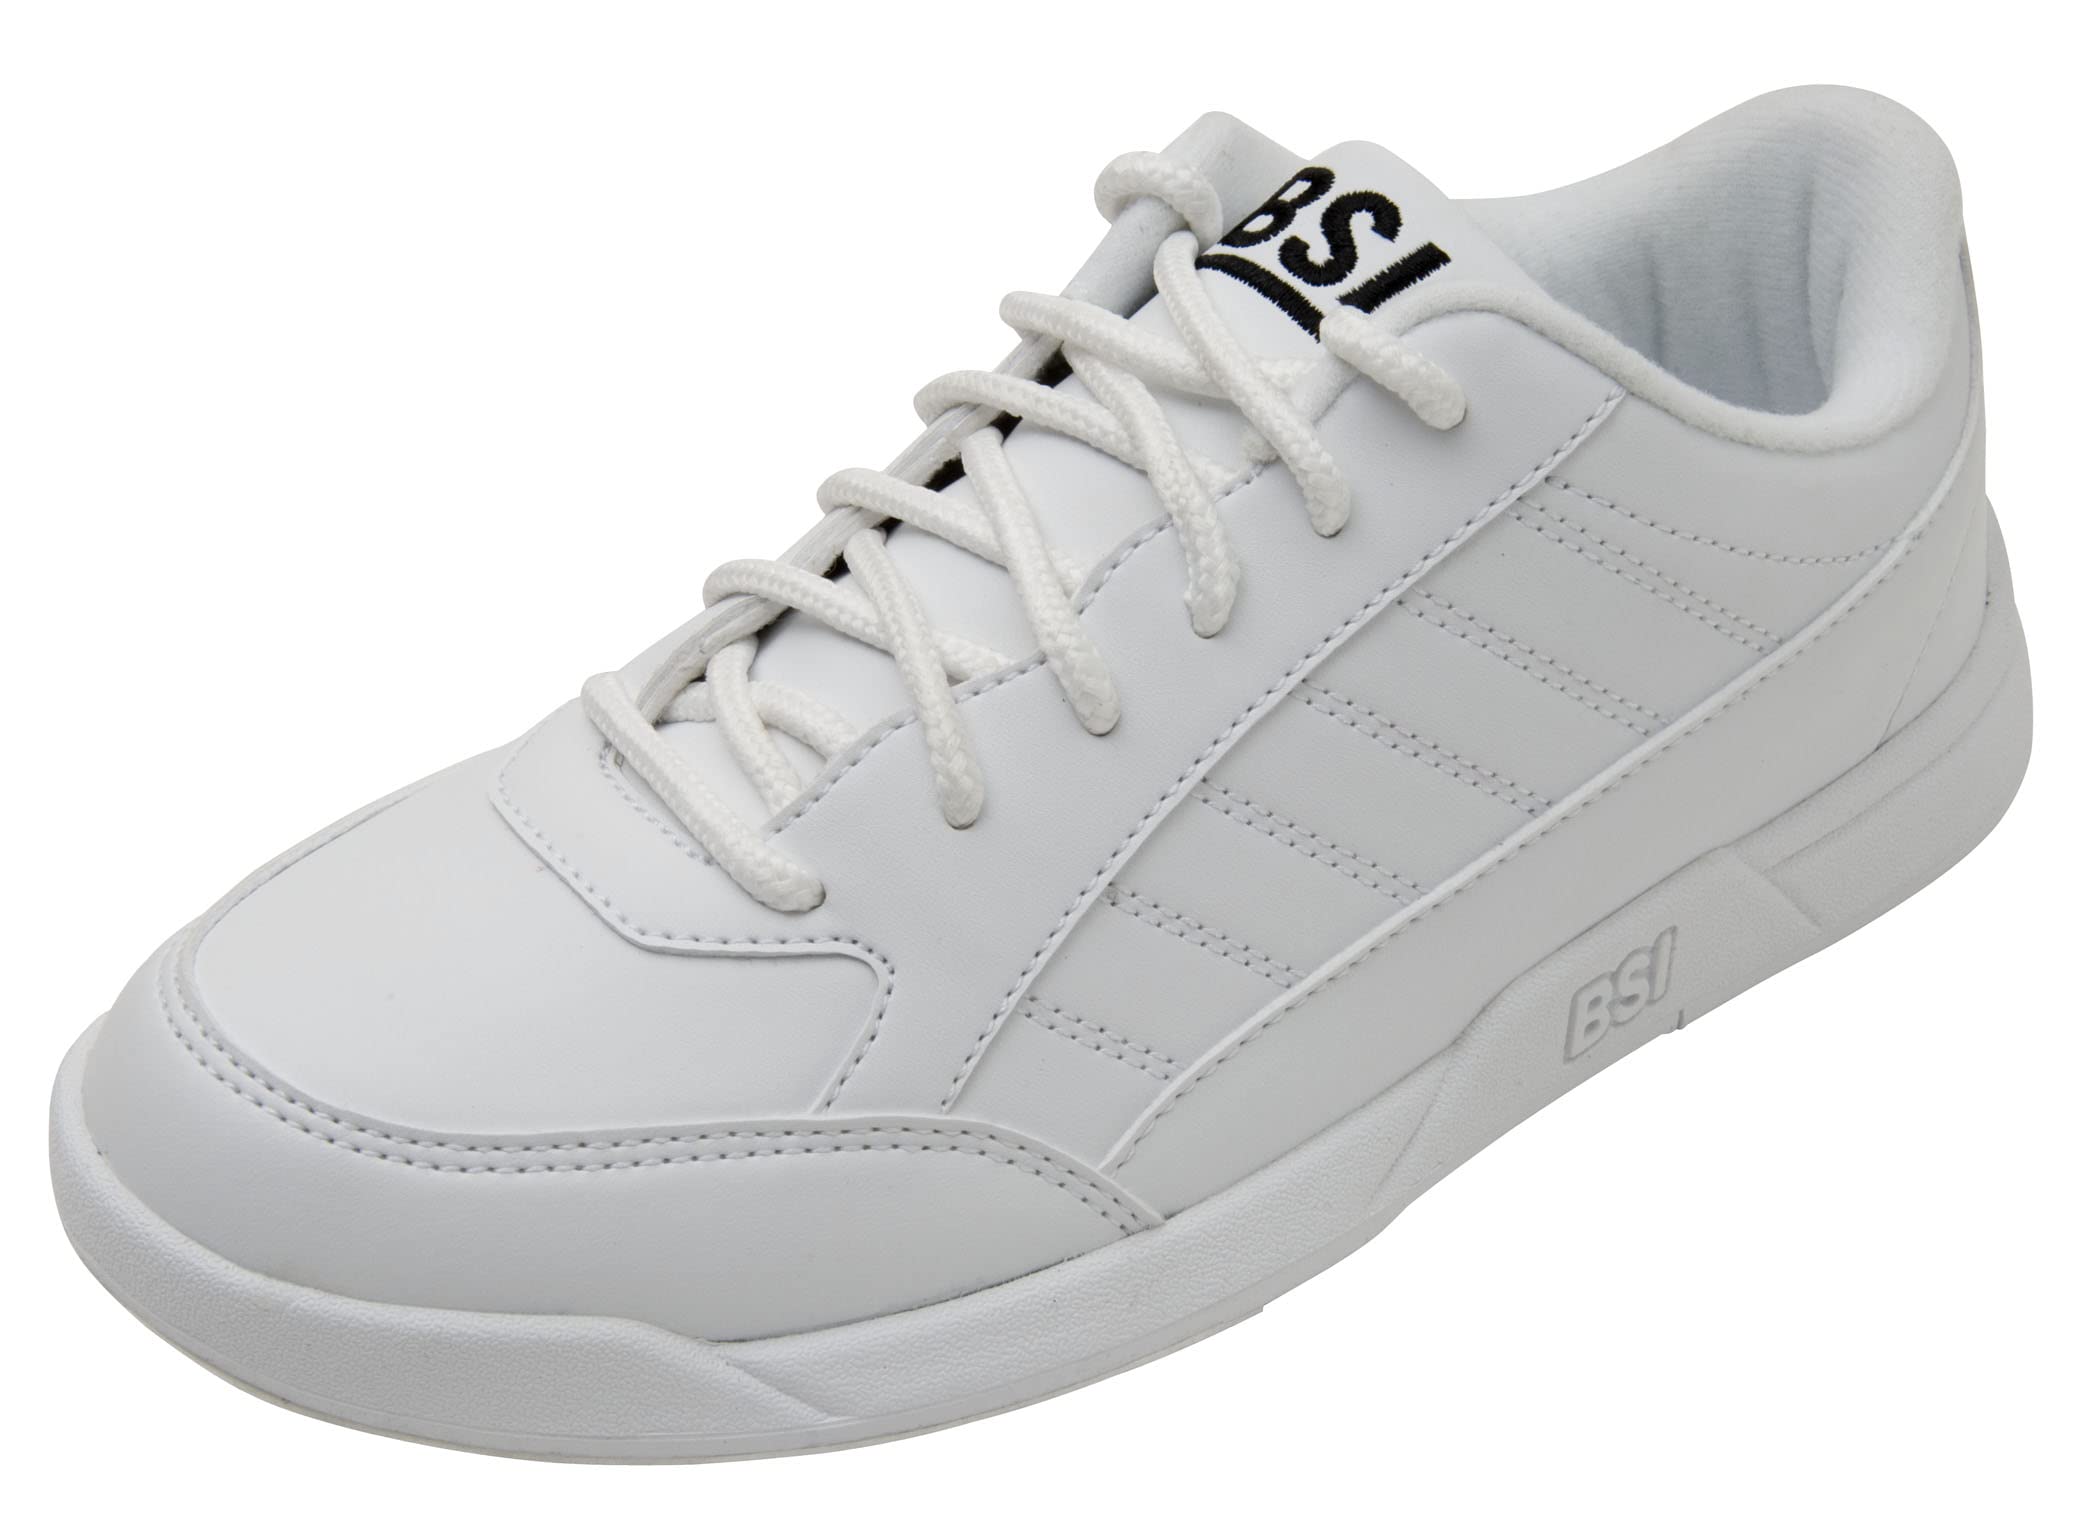 BSI Boys' Bowling Shoes White Size 2